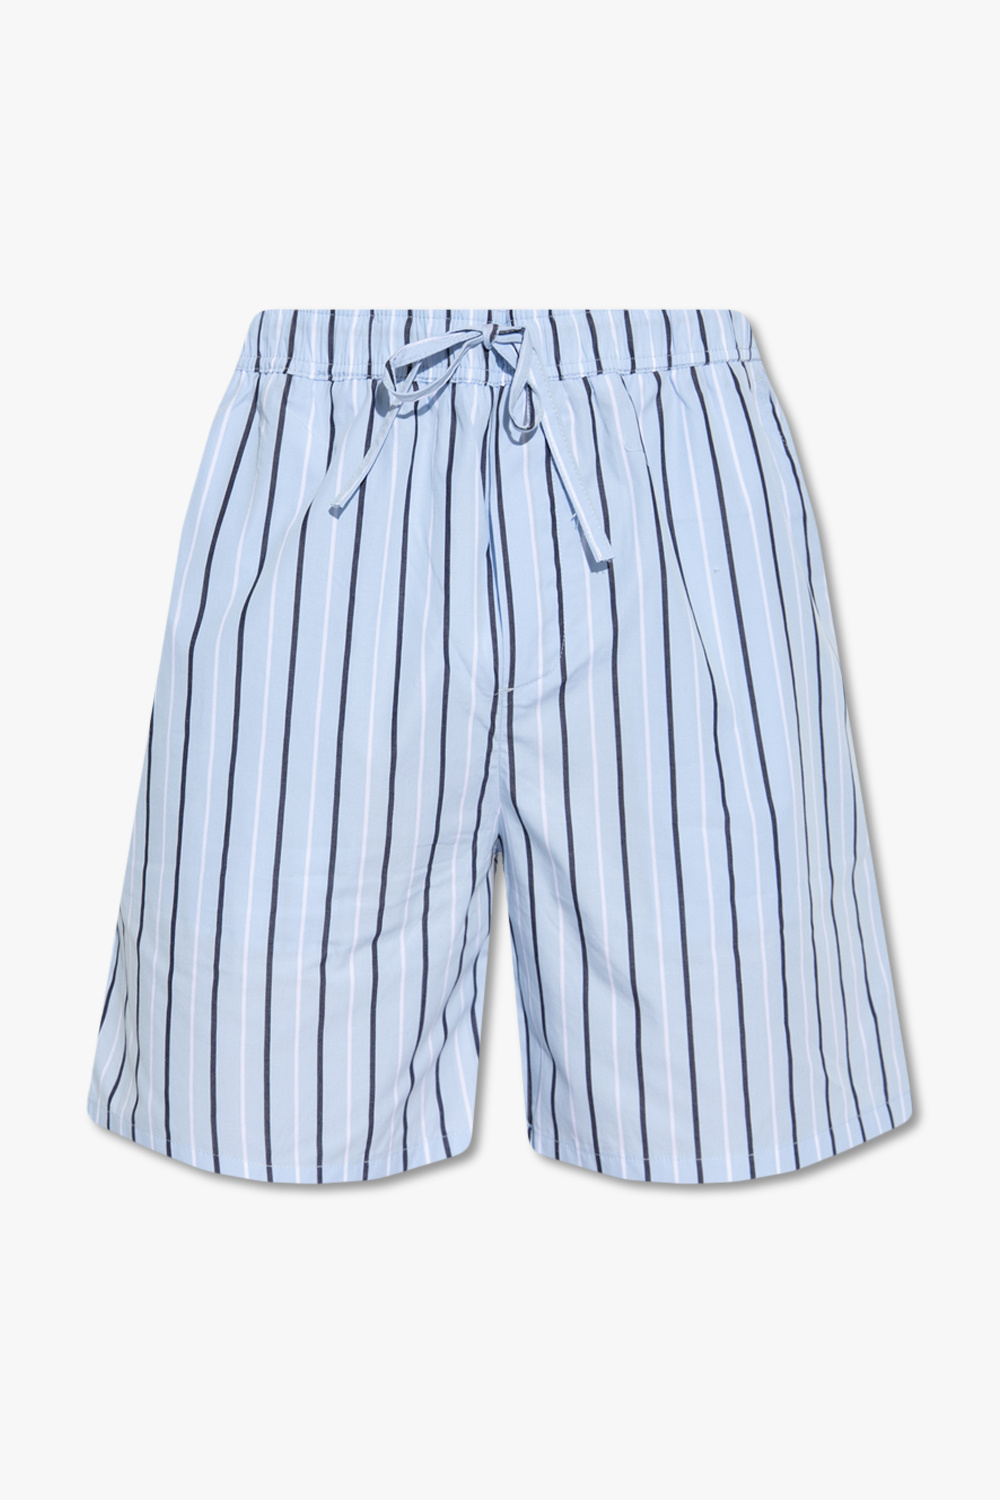 Samsøe Samsøe ‘Devon’ pyjama-style shorts